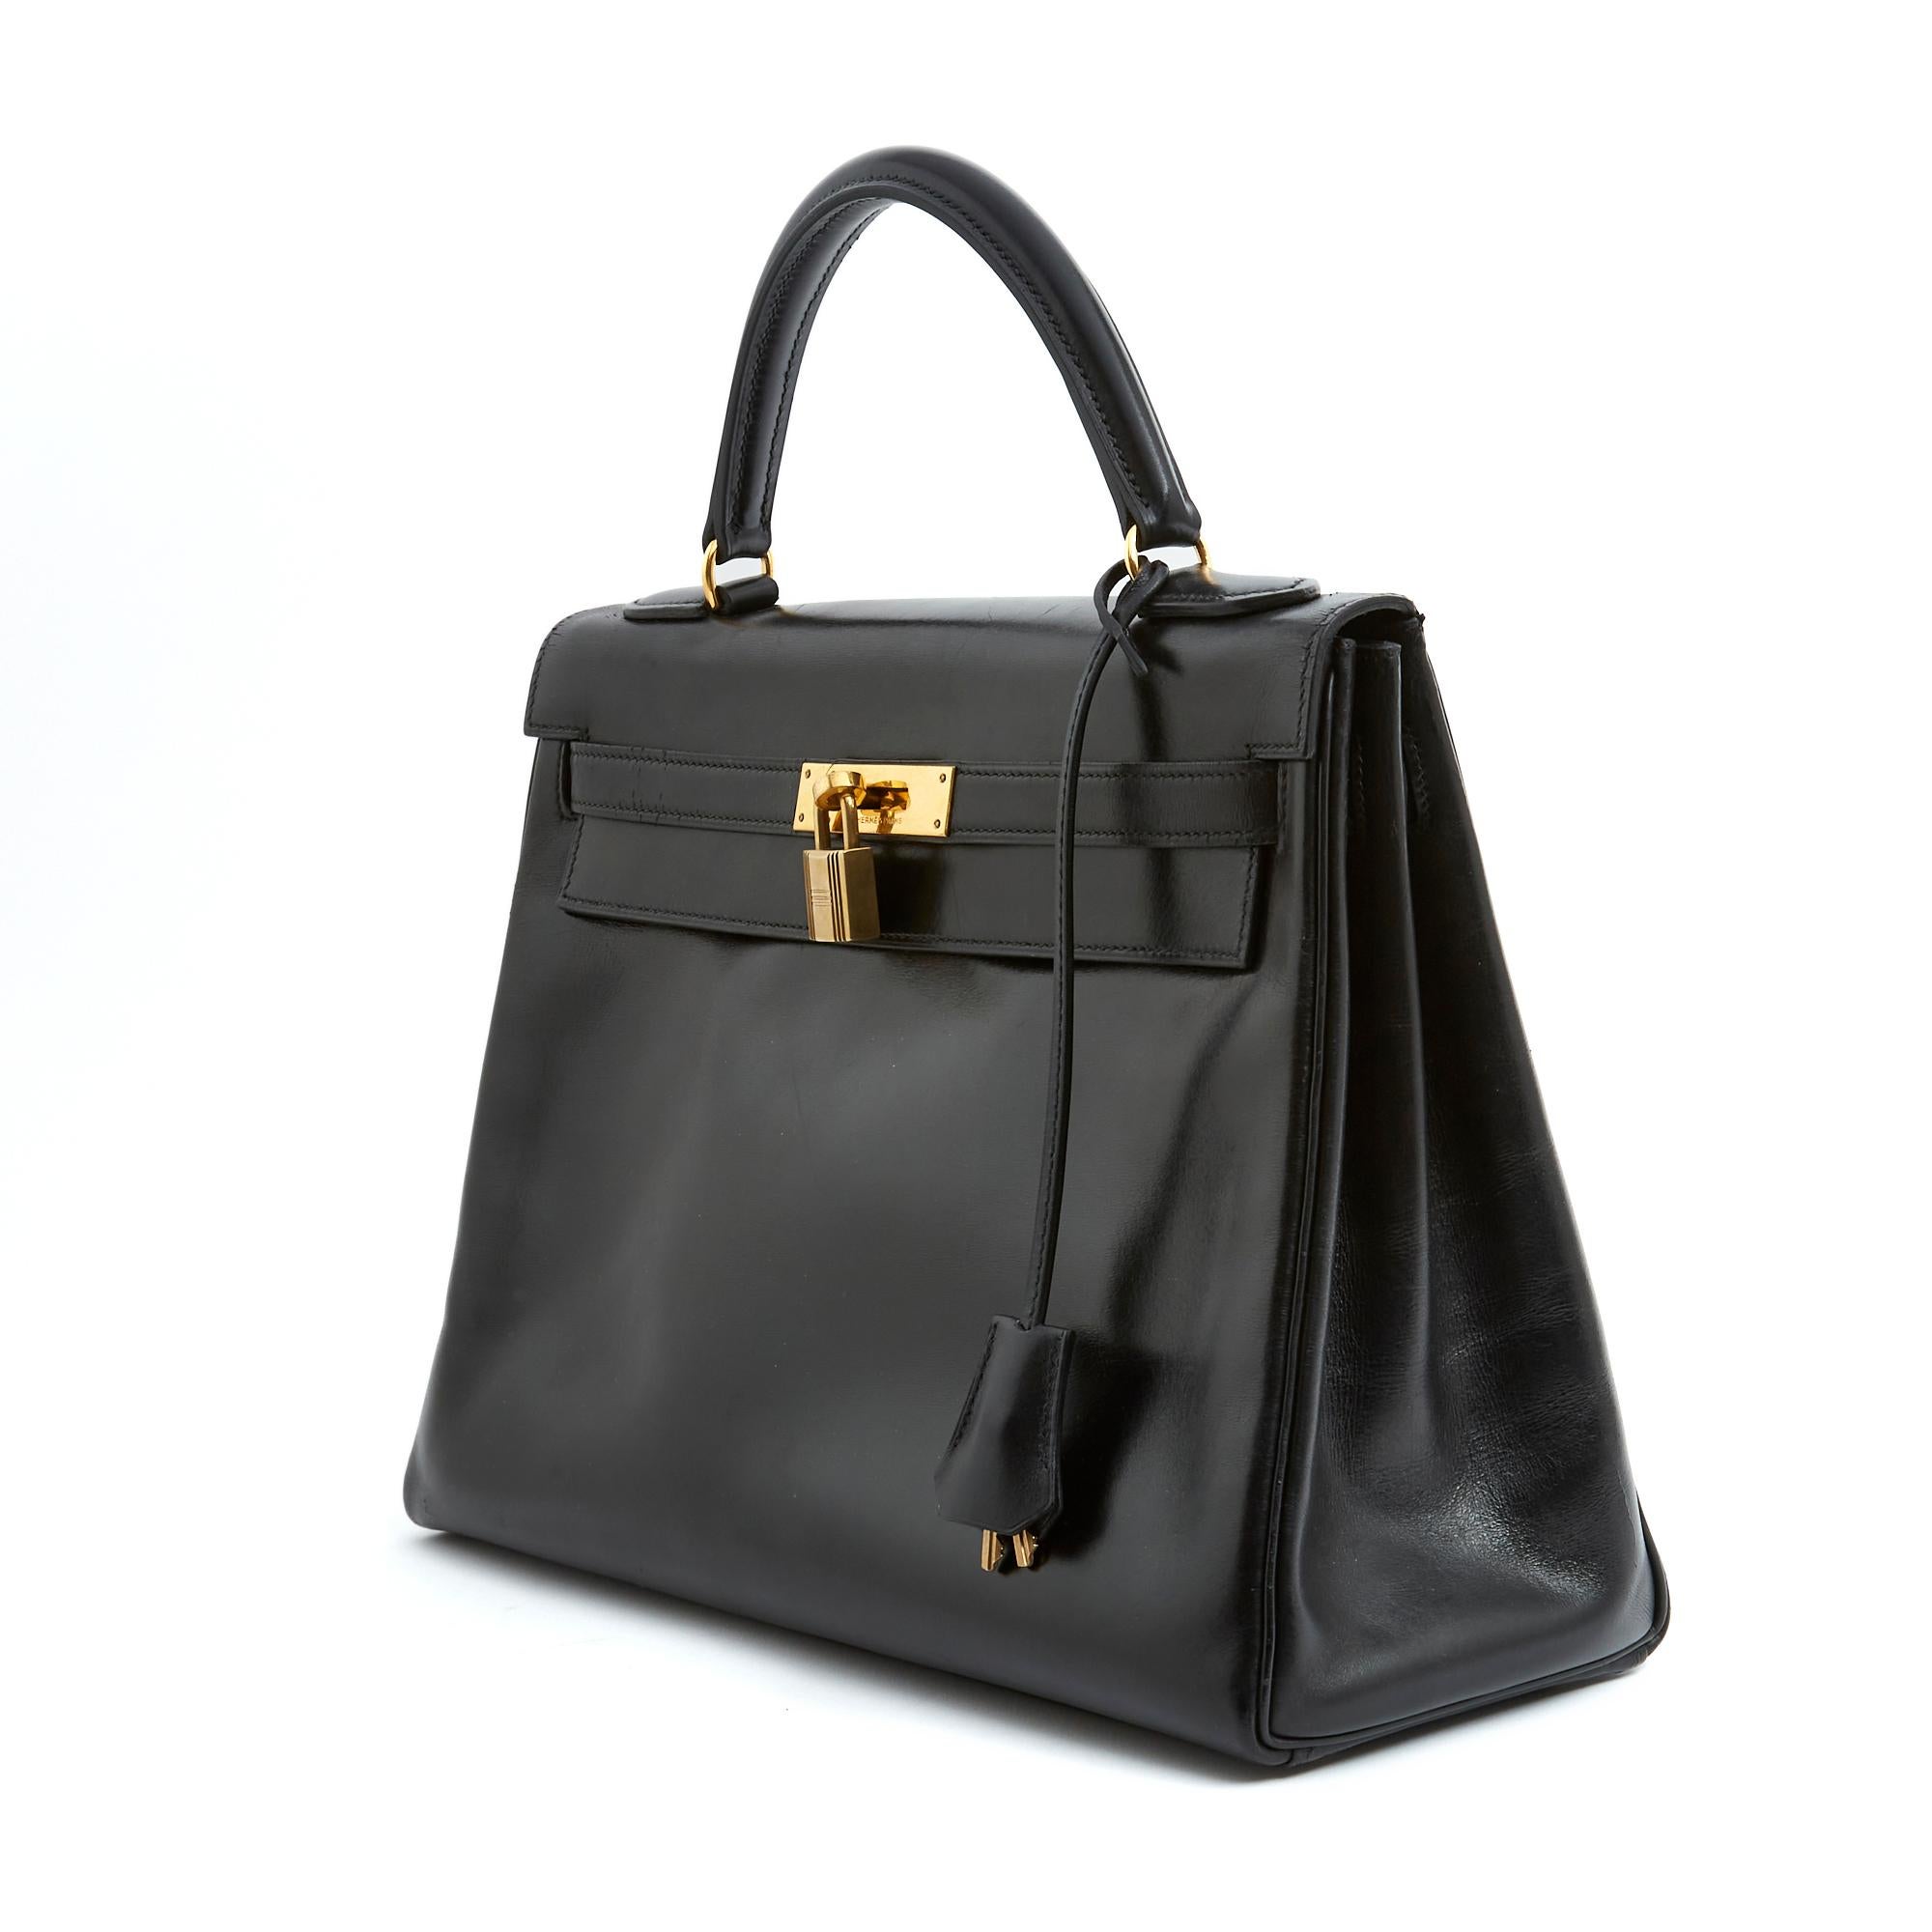 Hermès Kelly bag, format 32, in smooth black 